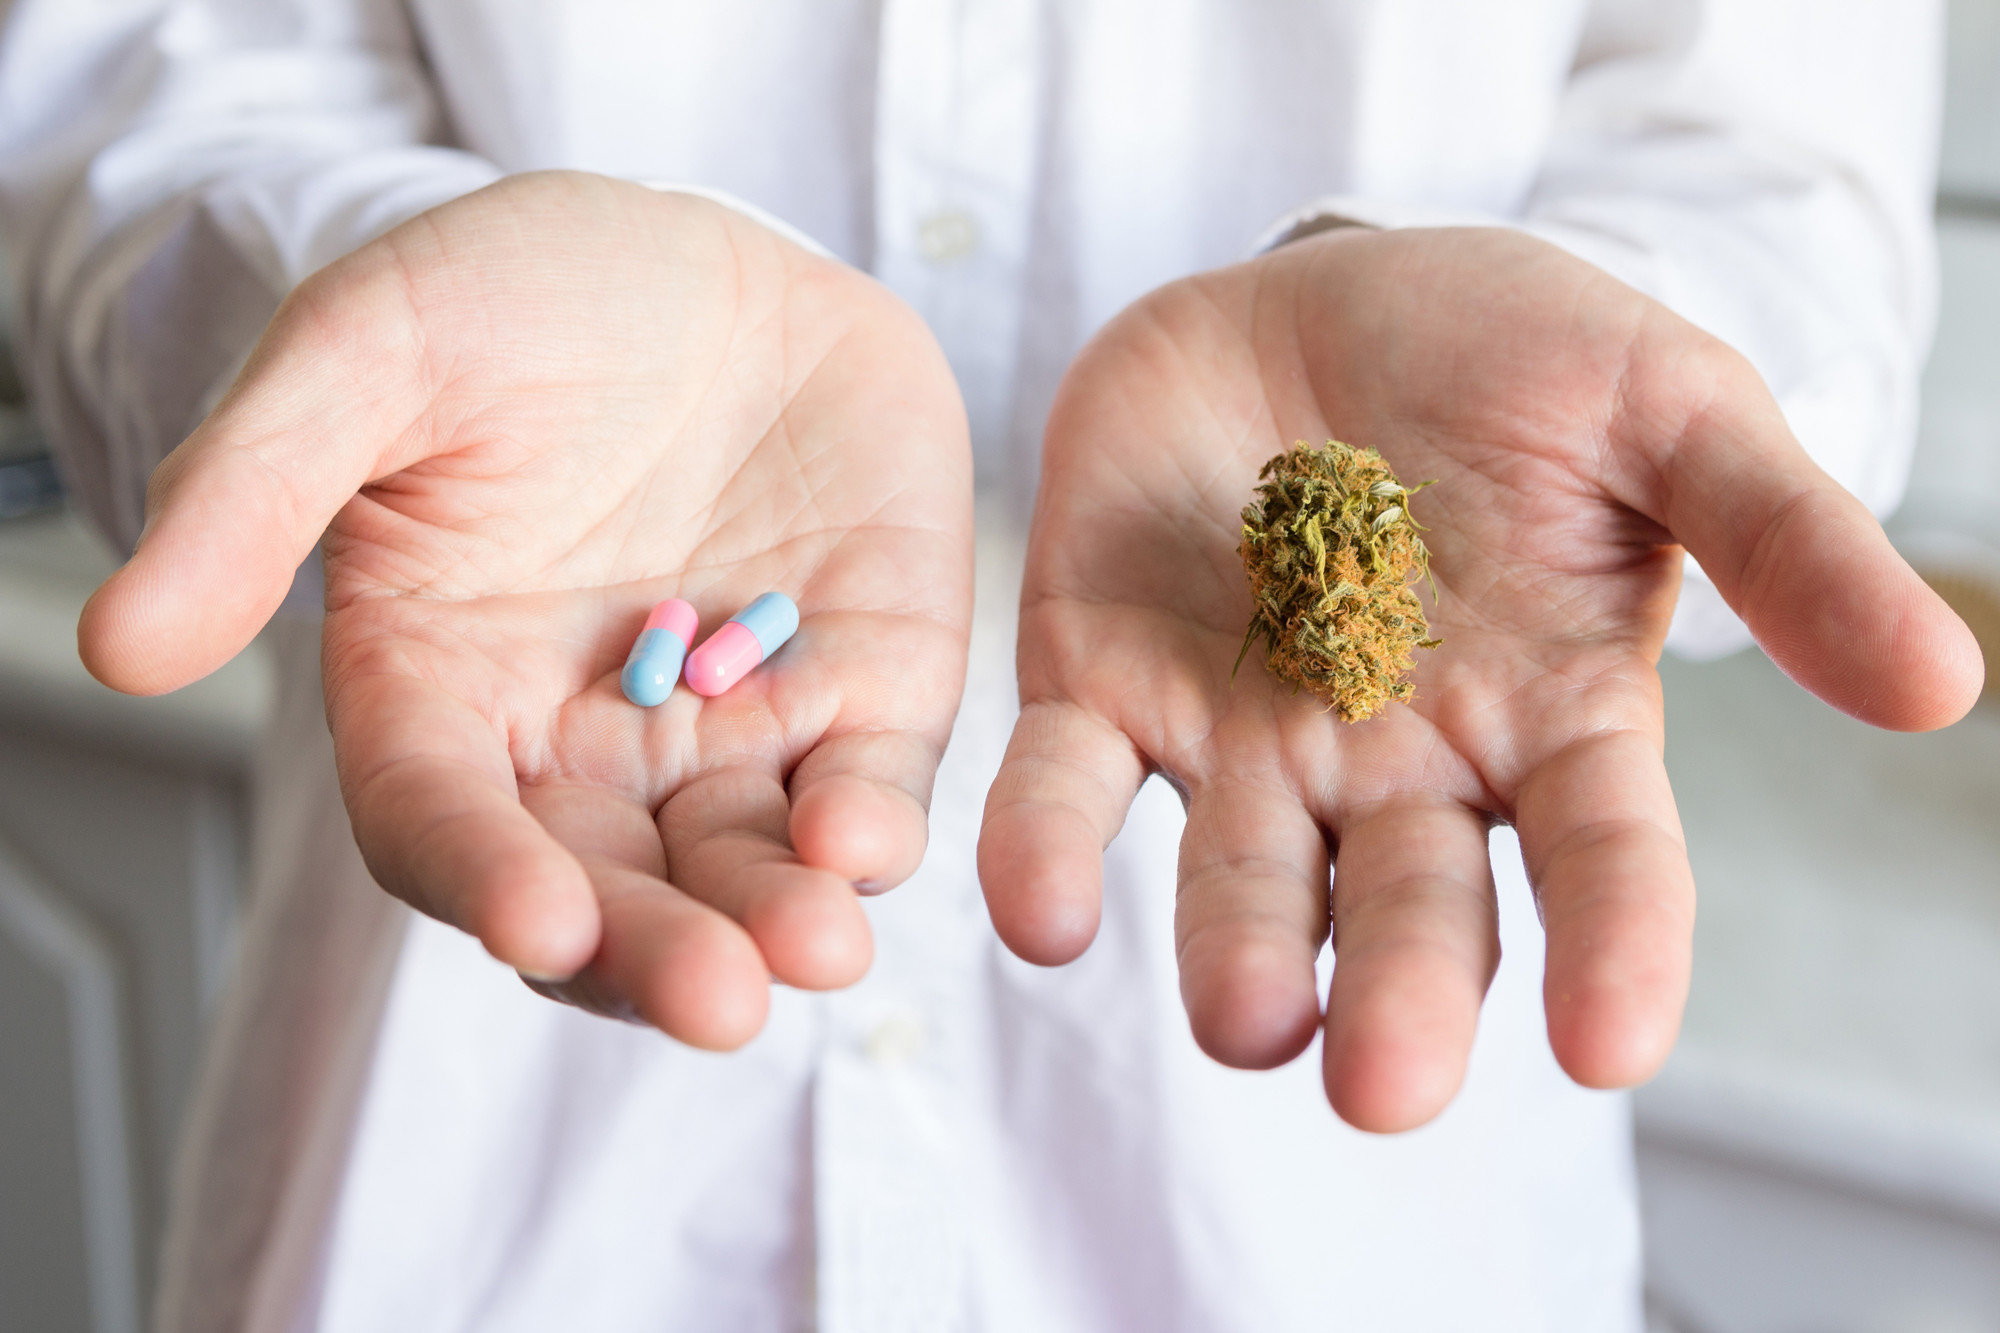 Cannabisarzneimittel werden bei chronischen Schmerzen aber auch bei therapieresistenten Beschwerden häufig als letzte Option eingesetzt – und bewirken selbst in der palliativen Situation teils erstaunliche Besserungen.